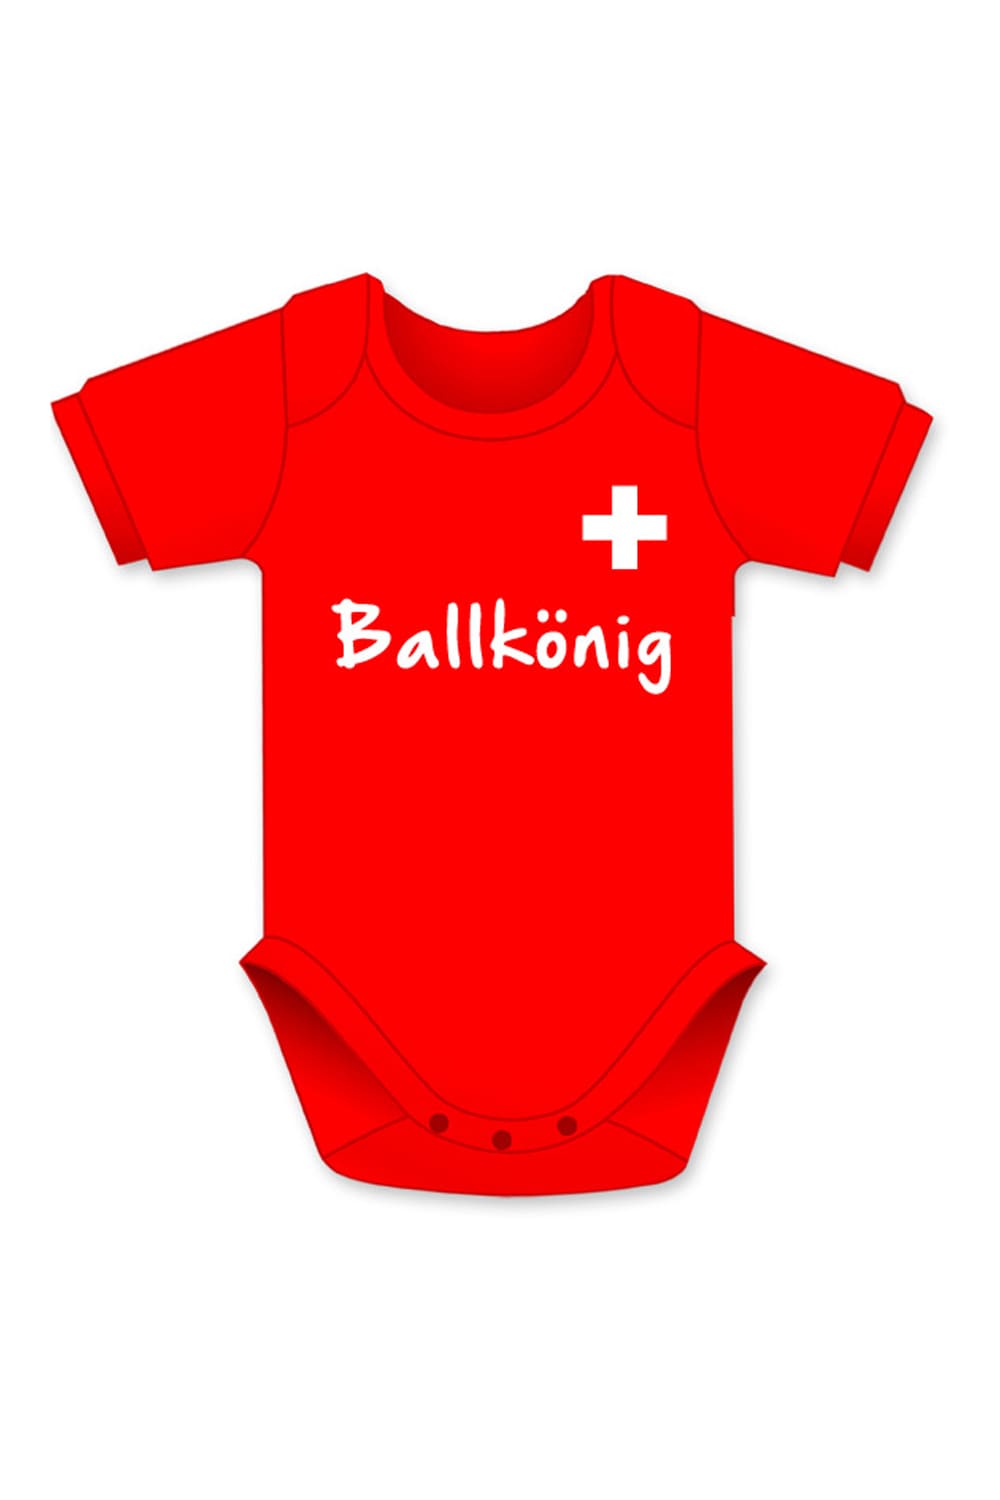 Ballkoenig Baby Body mit schweizer Flagge, Aufschrift und in der Farbe rot.